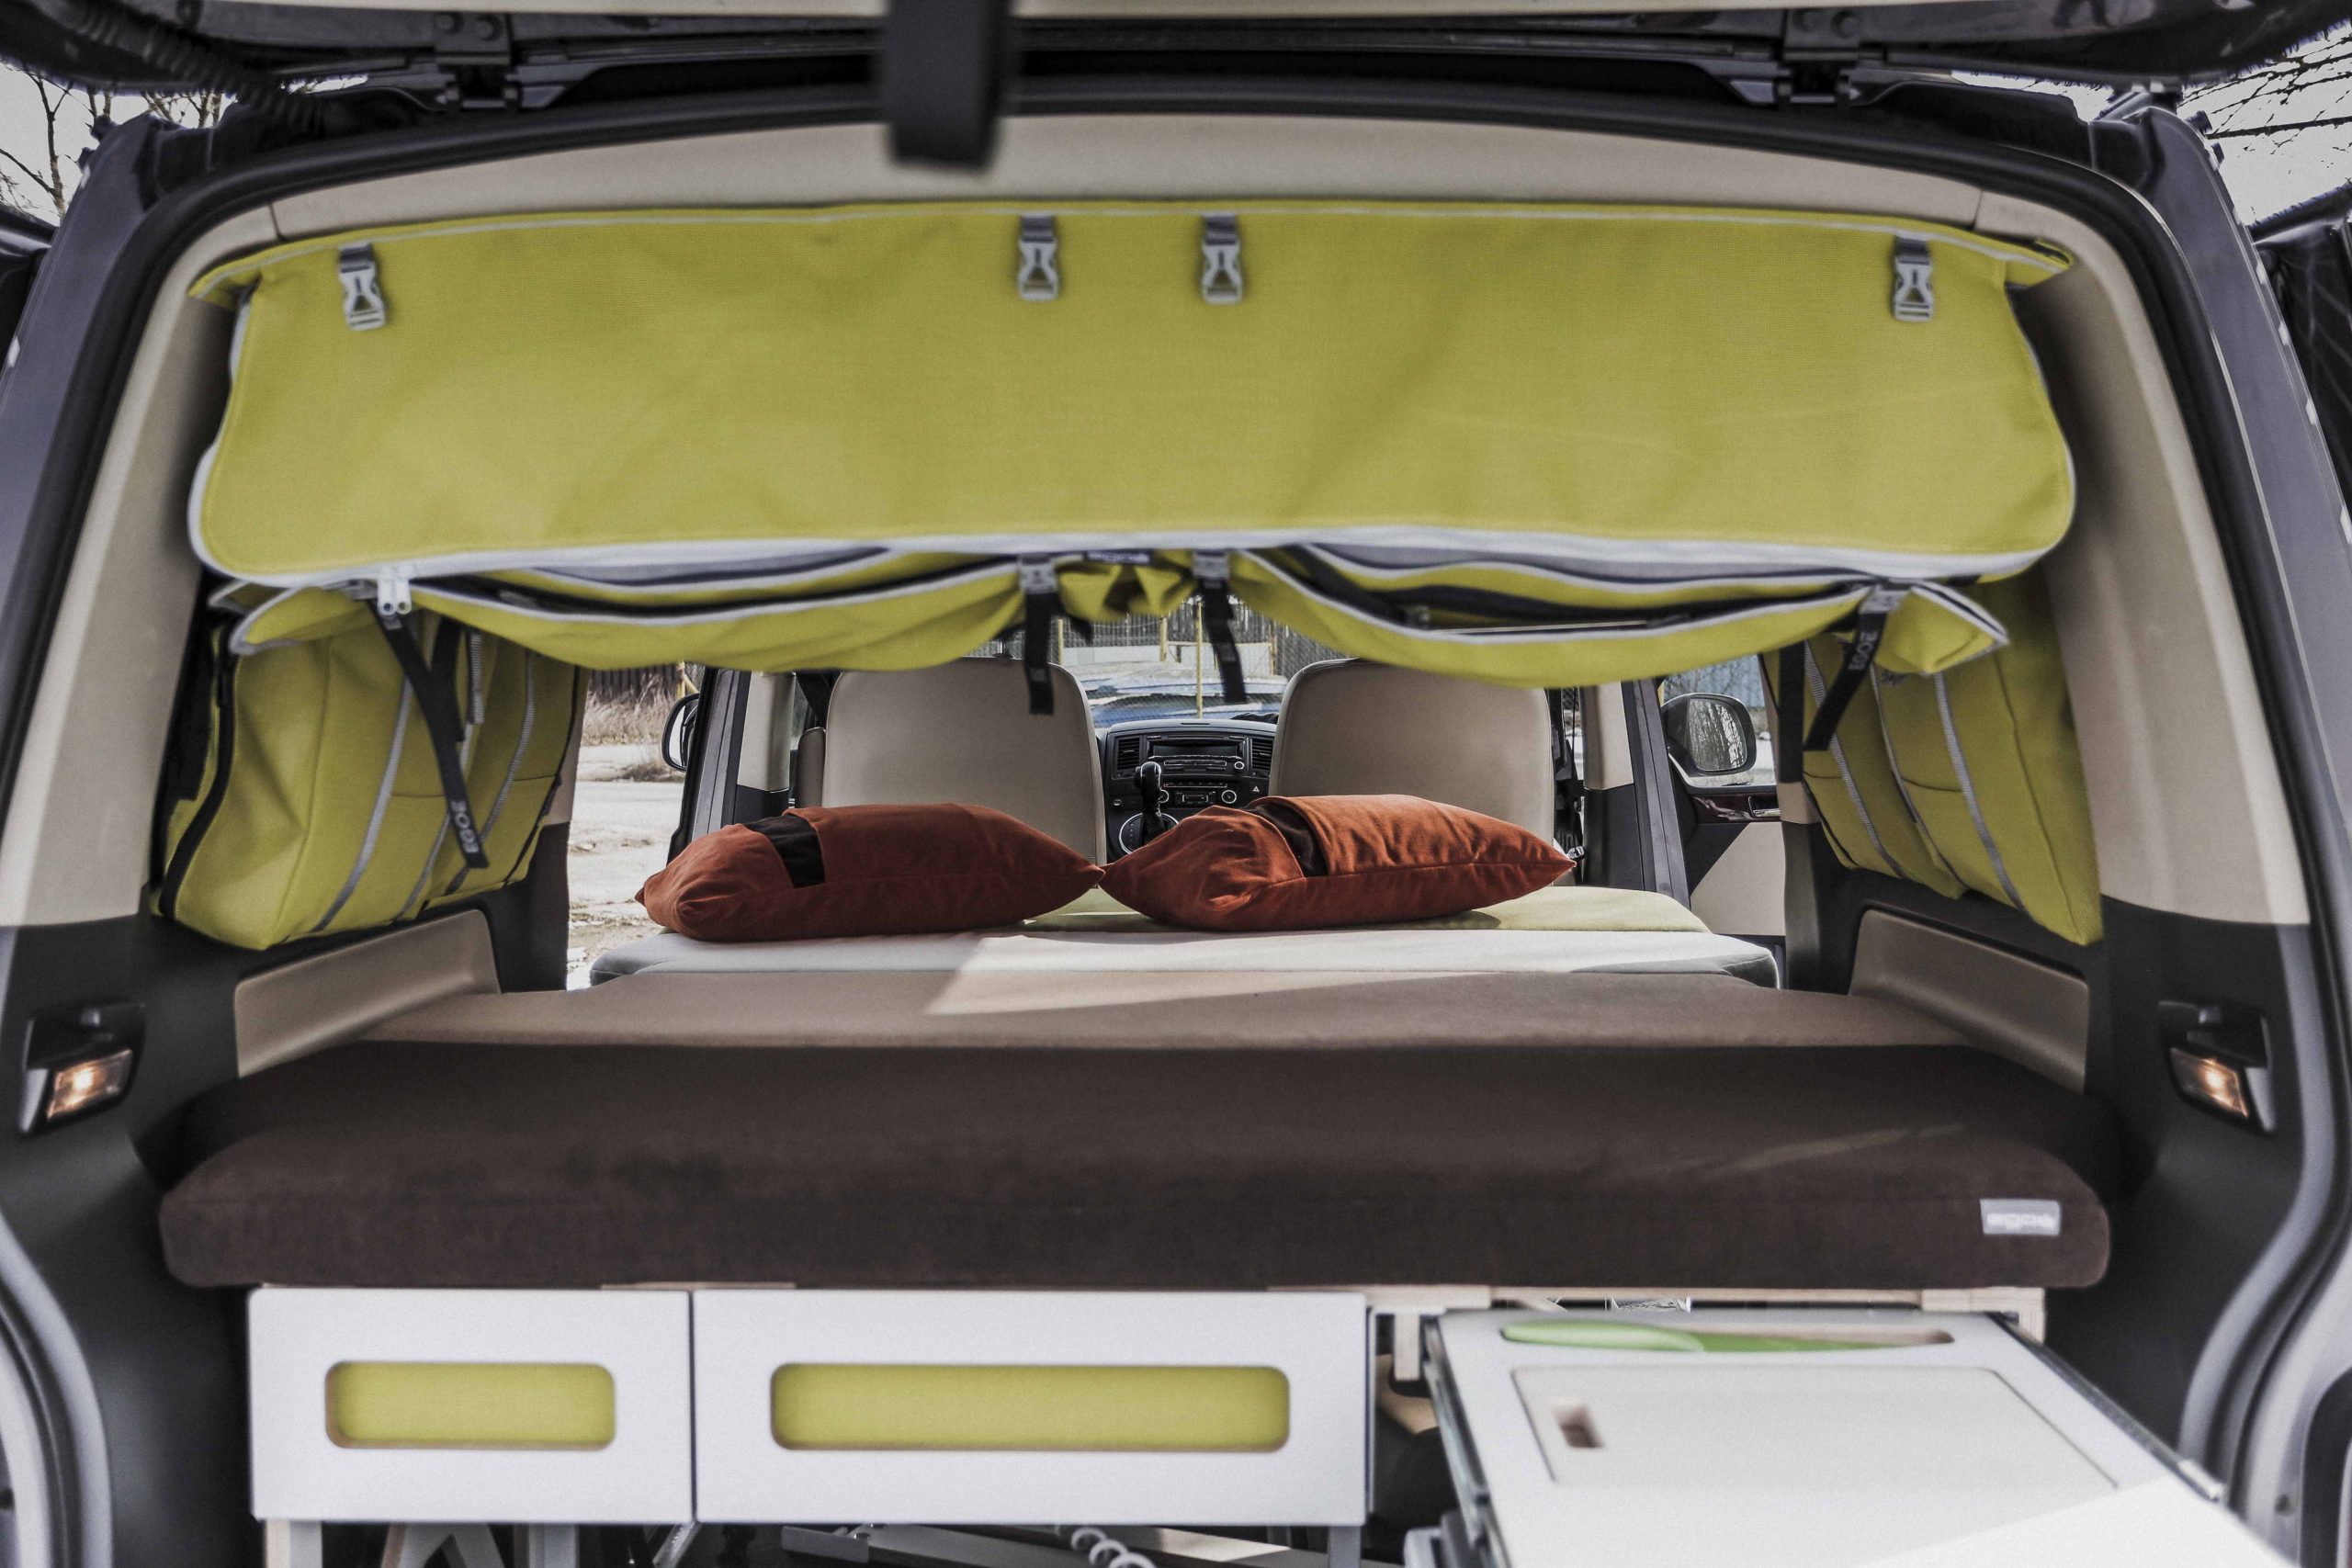 En campingmodul som är anpassad för att passa bilens baggageutrymme, med en bekväm säng, förvaringsutrymmen, en inbyggd kök med gasolspis och vattentank för en bekväm utomhusupplevelse.